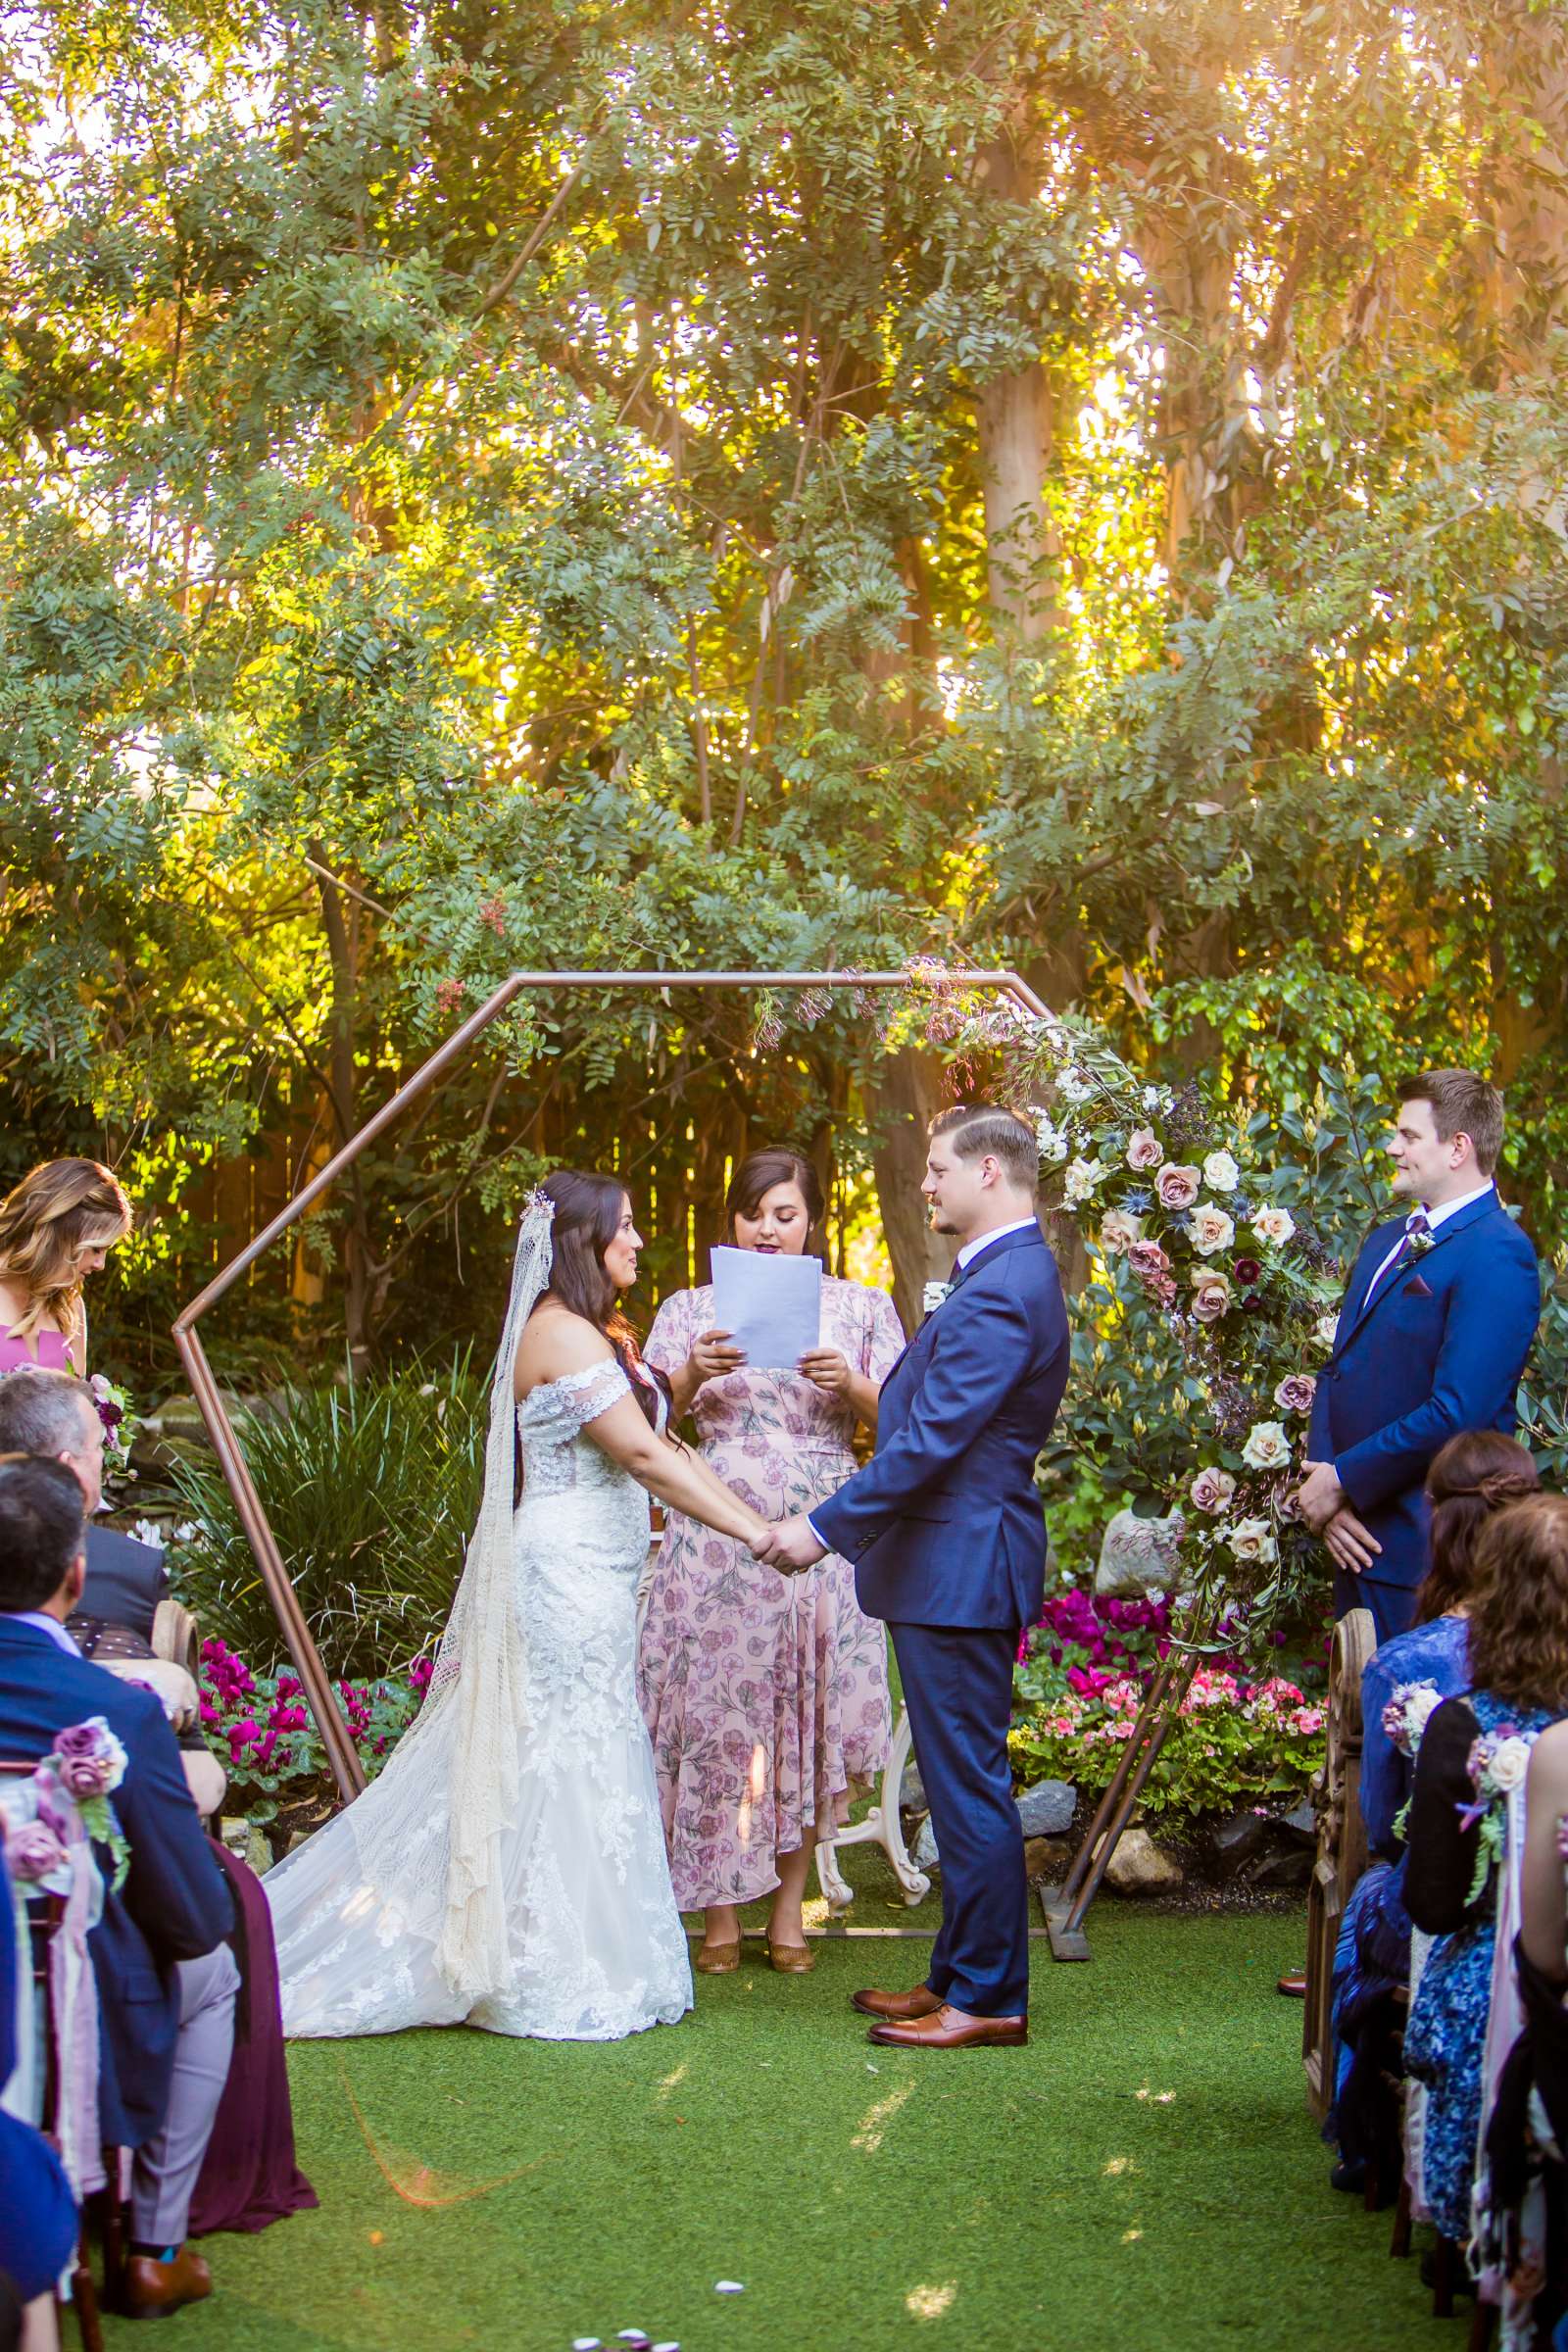 Twin Oaks House & Gardens Wedding Estate Wedding, Stephanie and Ilija Wedding Photo #71 by True Photography